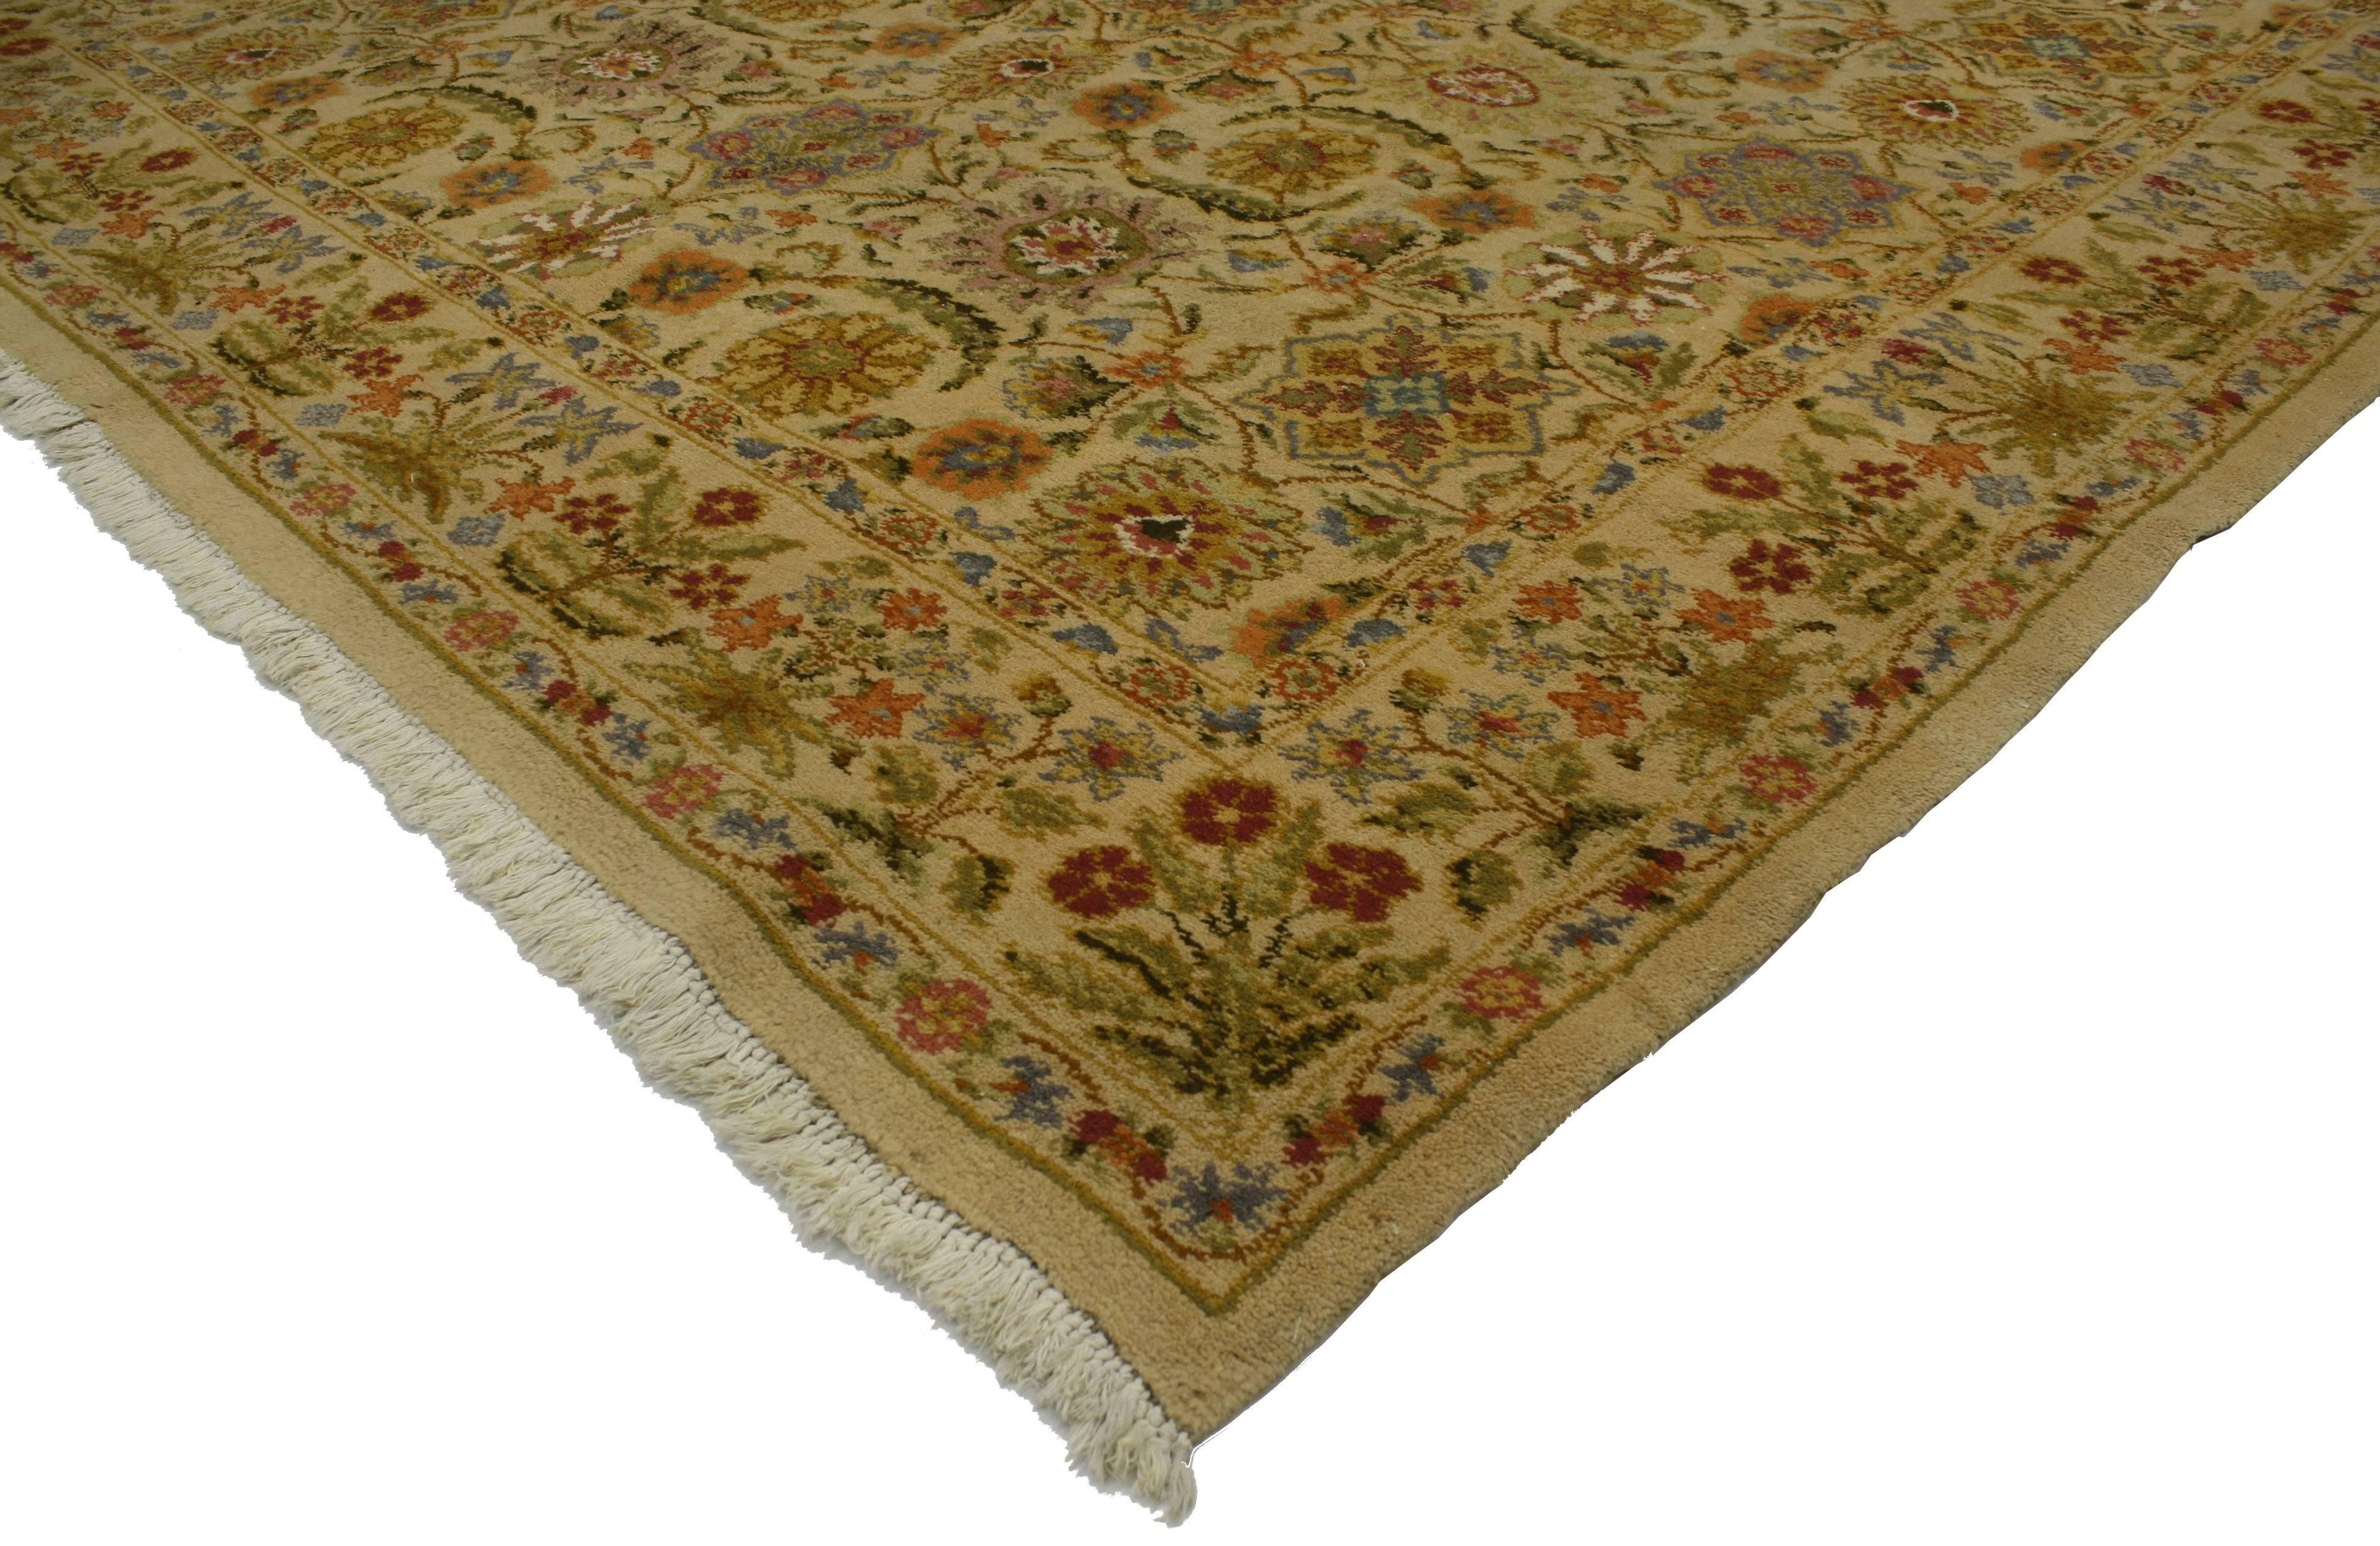 Ce tapis vintage espagnol de couleur dorée présente un style moderne et traditionnel. Ce modèle présente des motifs floraux et botaniques entourés d'une bordure complémentaire. Fabriqué au milieu du XXe siècle, ce tapis espagnol vintage peut